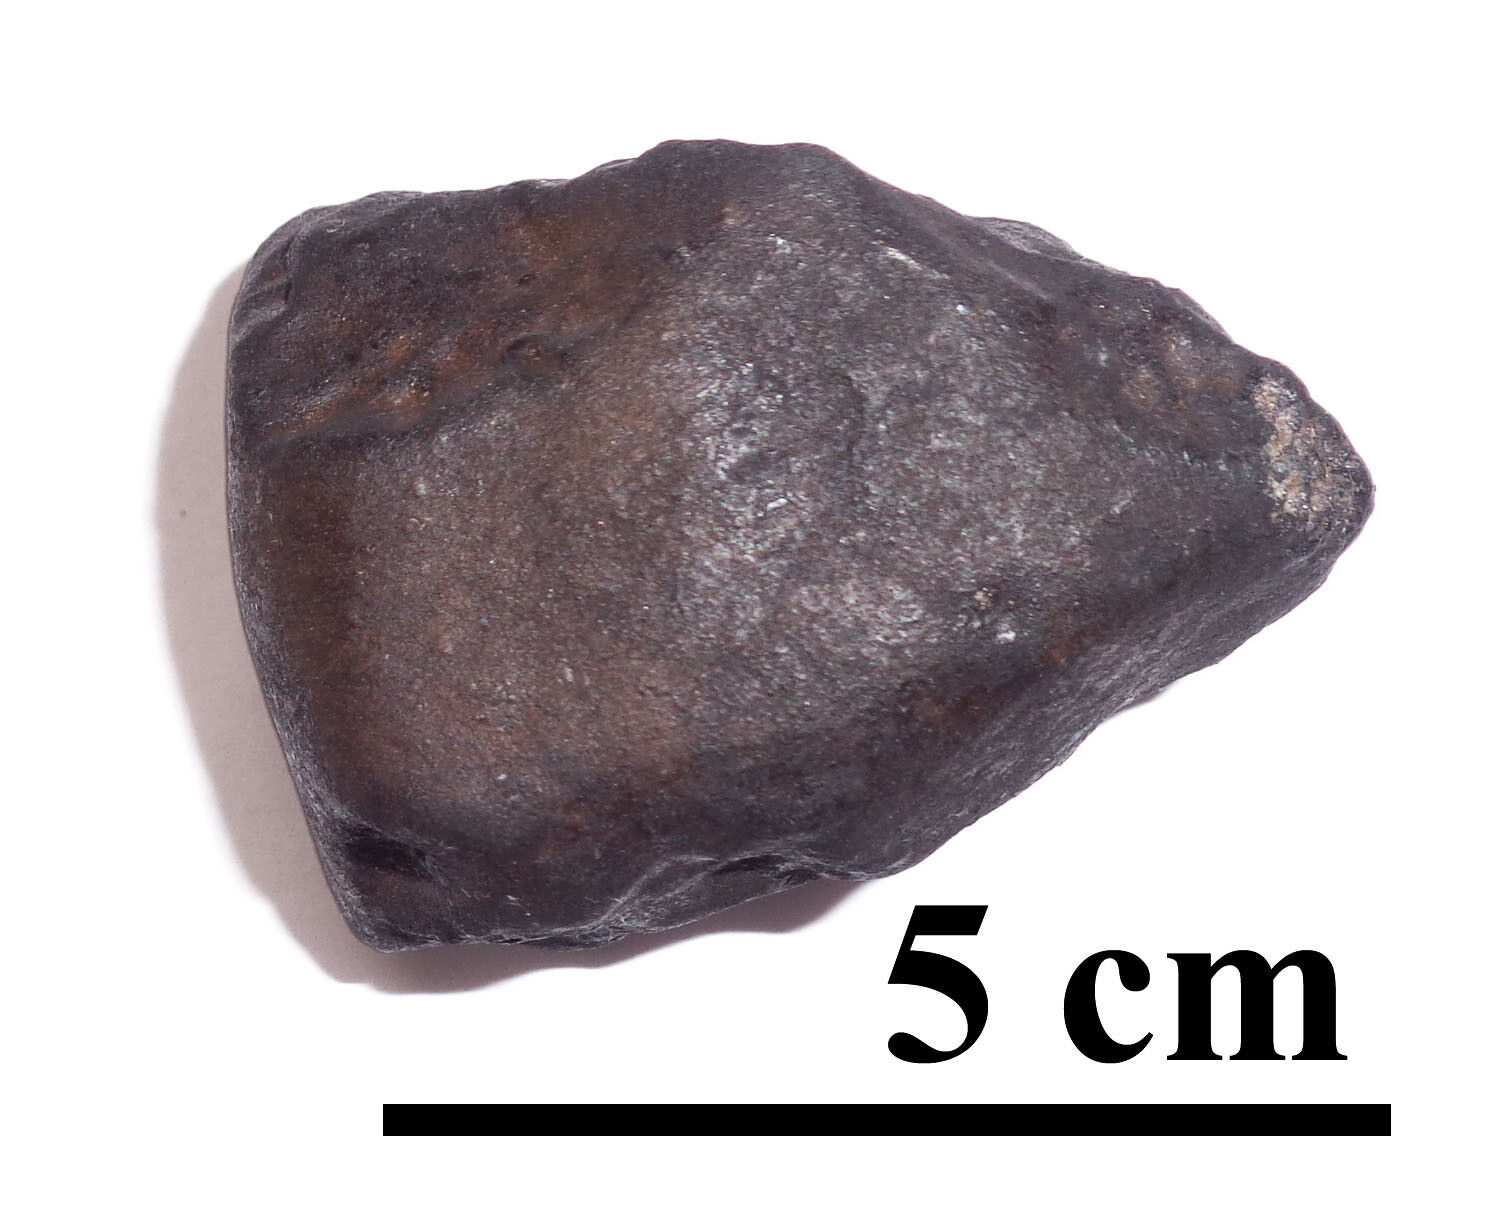 NEWEST OZERKI meteorite L6, fall June 21, 2018, Russia, individual 91.8 grams